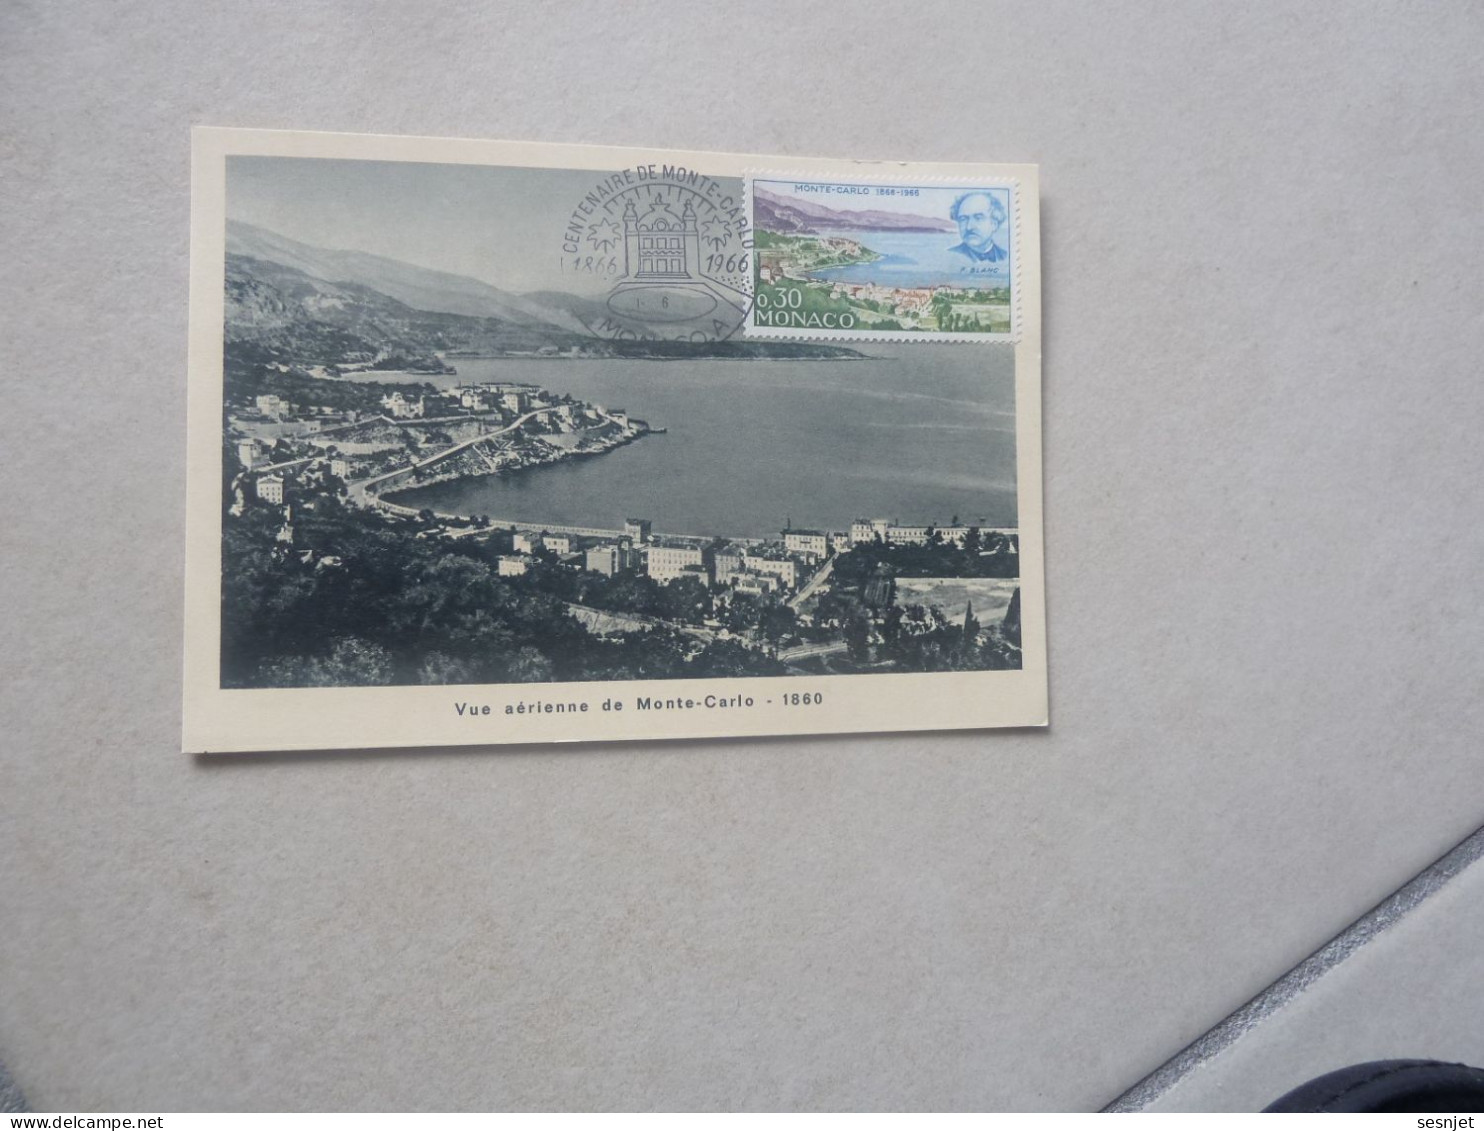 Monaco - Vue Aérienne De Monte-Carlo (1860) - 0f.30 - Yt 697 - Carte Premier Jour D'Emission - Année 1966 - - Maximum Cards